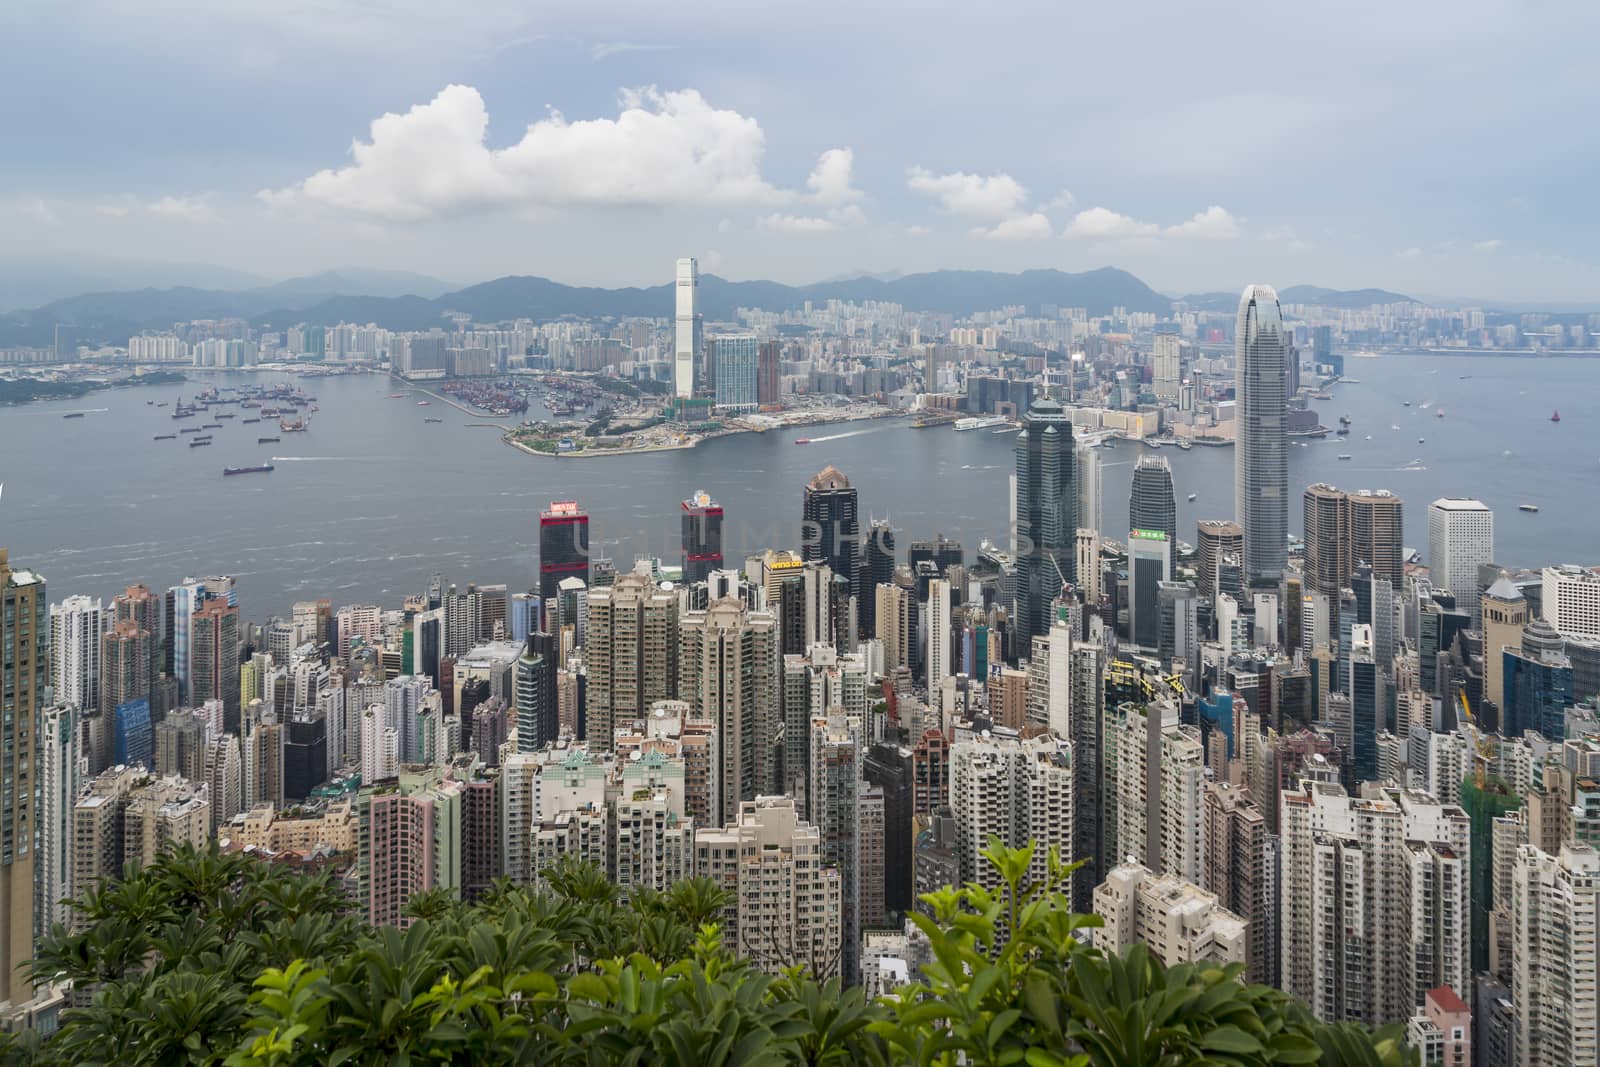 Hong Kong Skyline by hongee